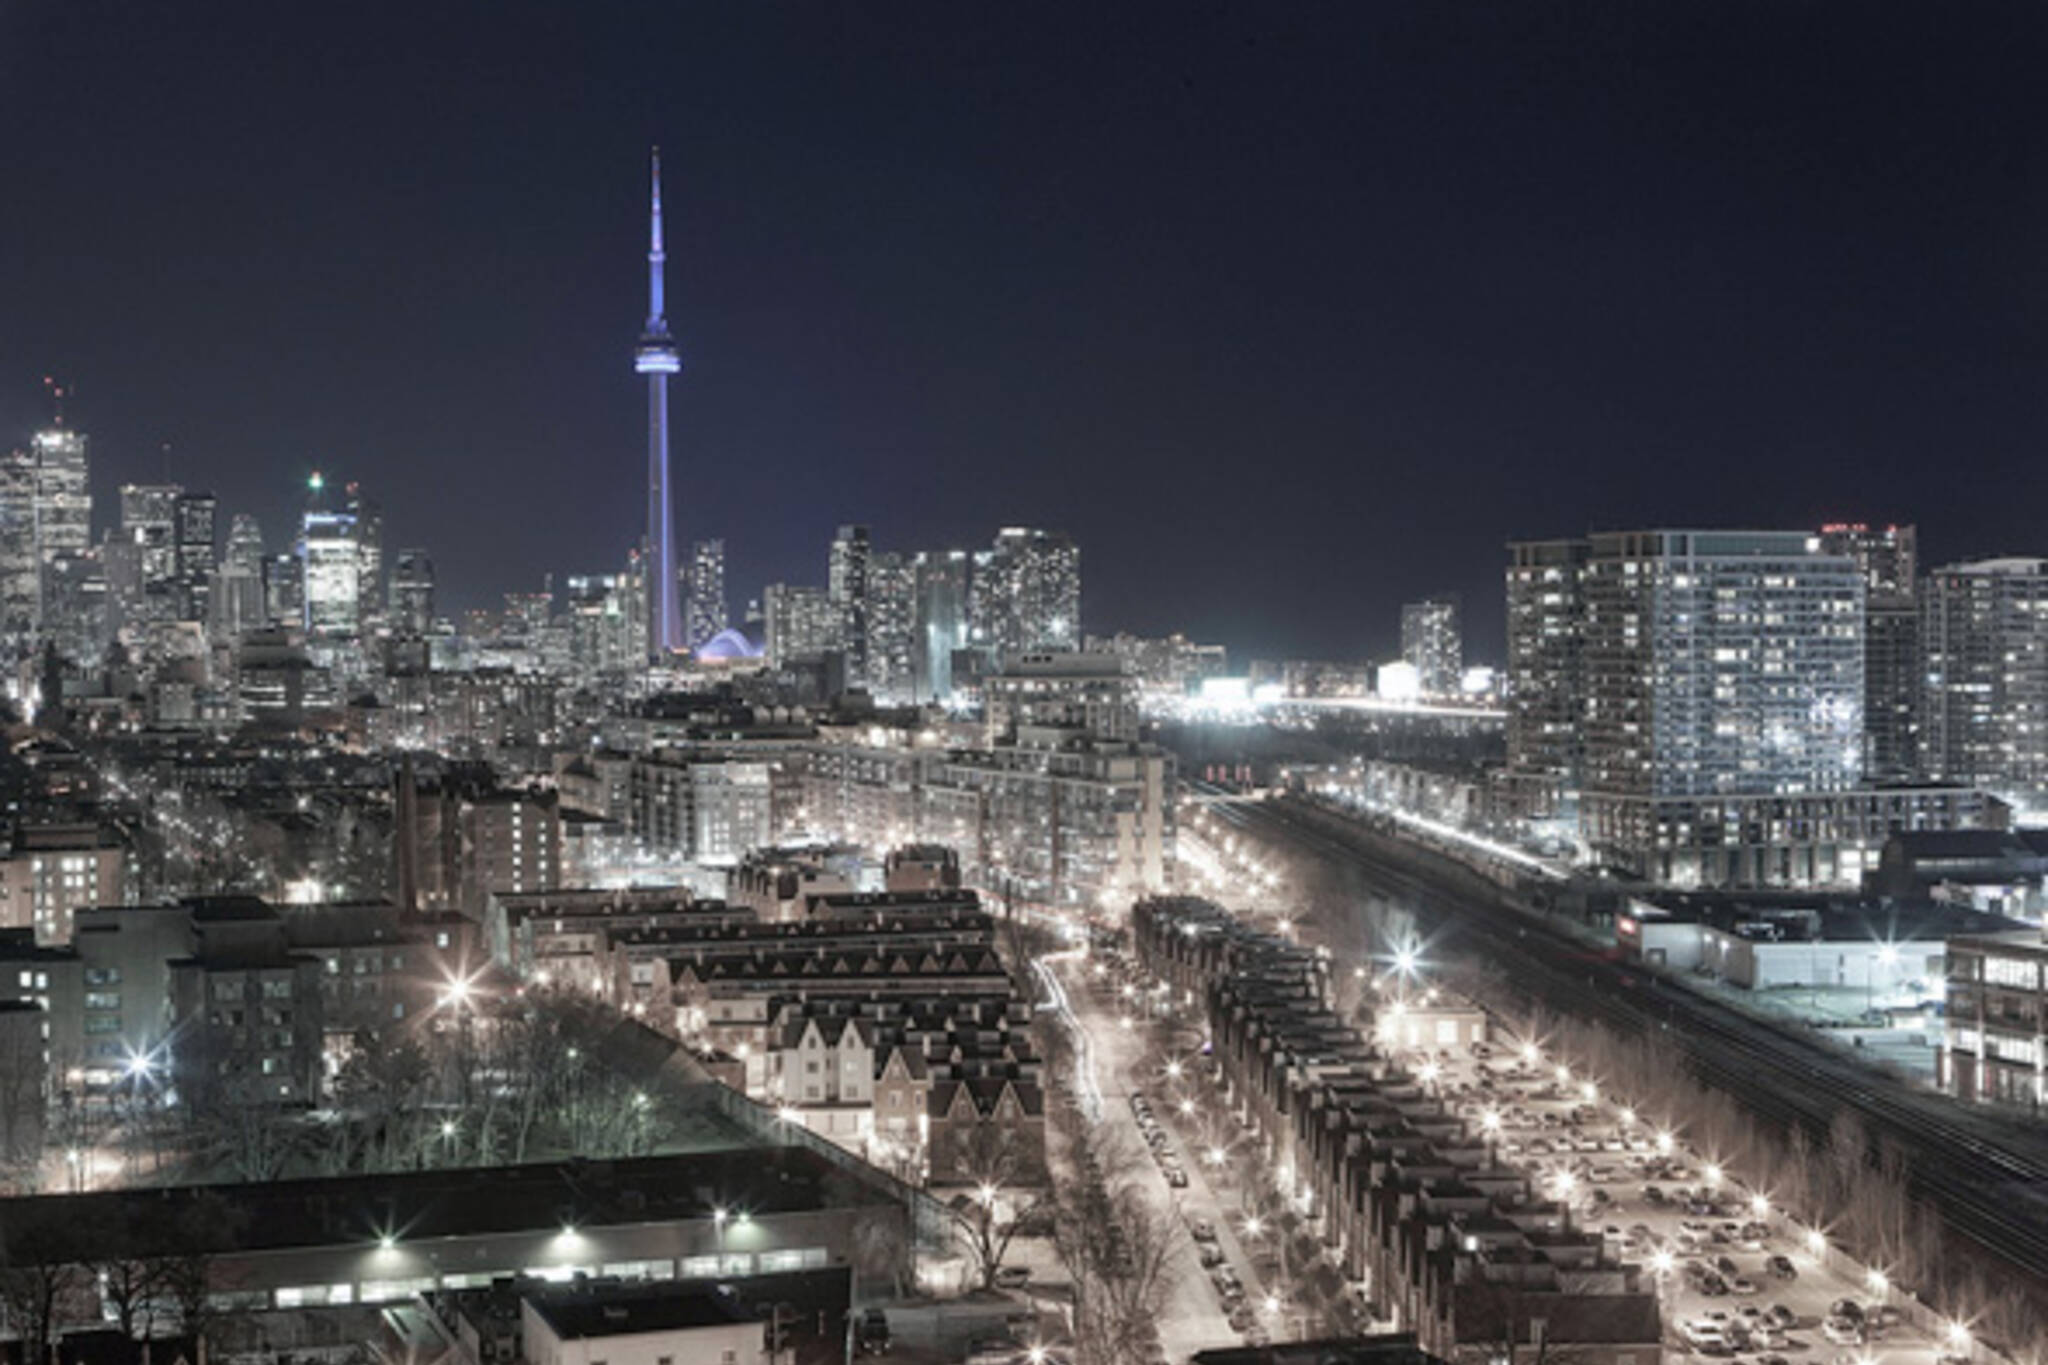 Toronto Skyline Lights